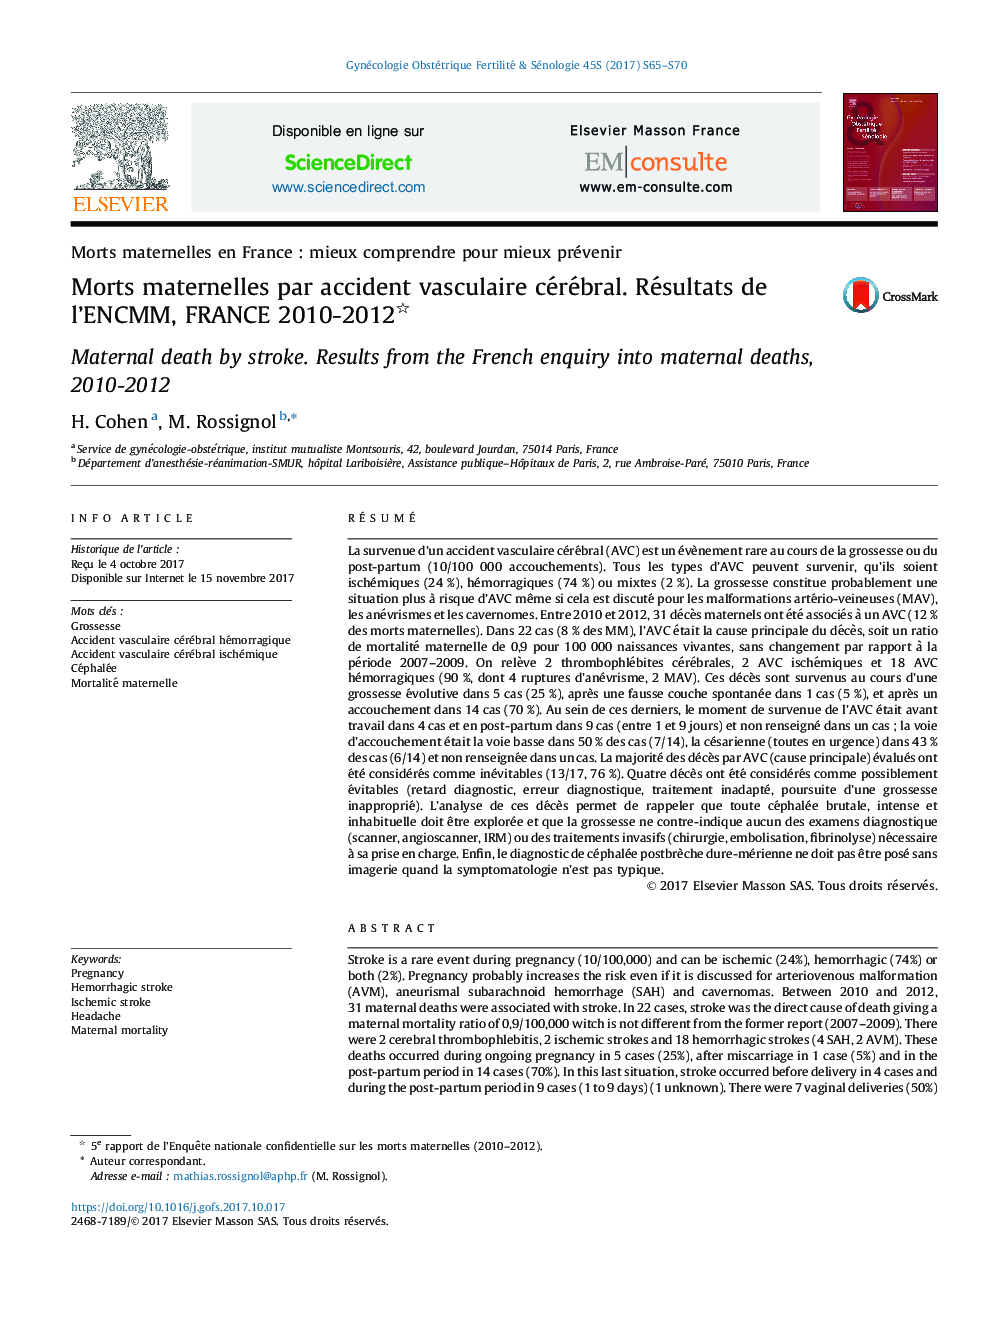 Morts maternelles par accident vasculaire cérébral. Résultats de l'ENCMM, FRANCE 2010-2012